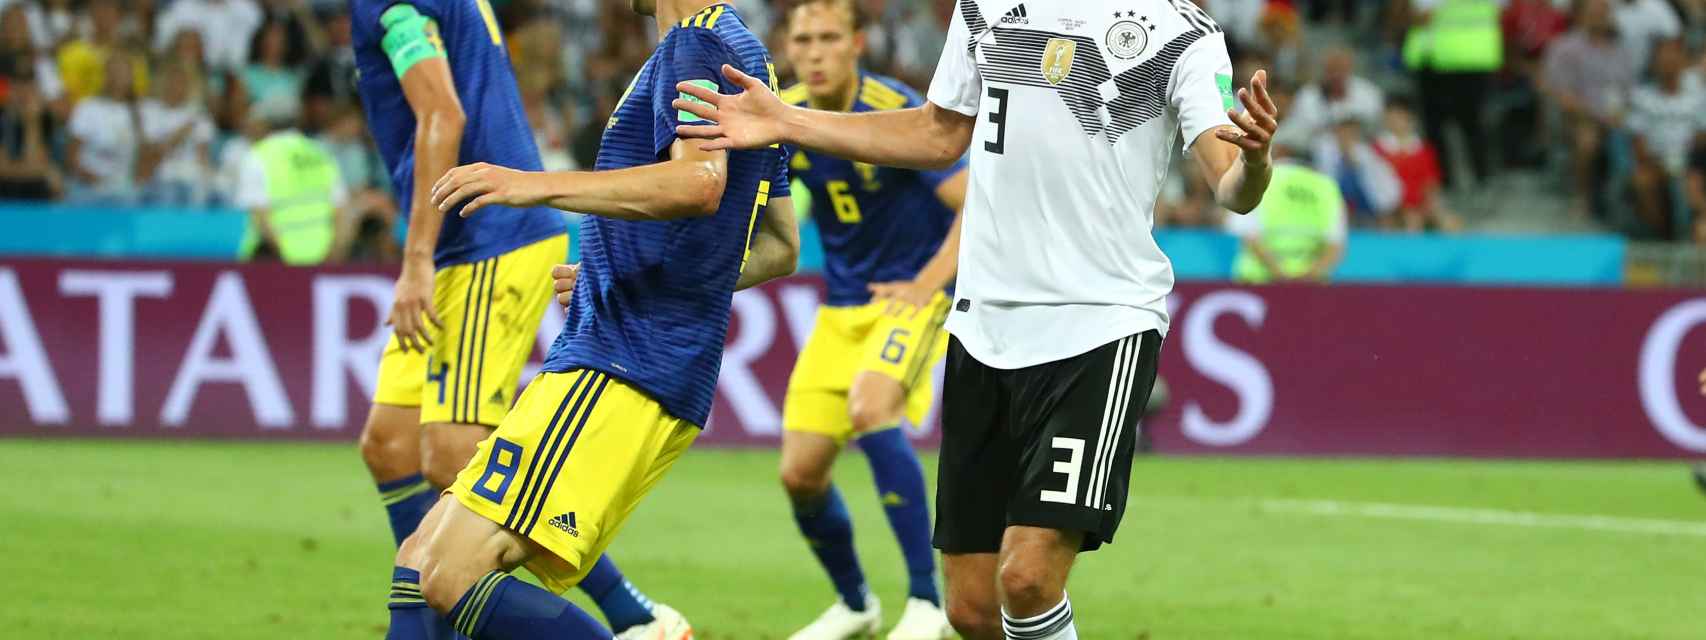 Alemania - Suecia en vivo y en directo: Reus empata el partido